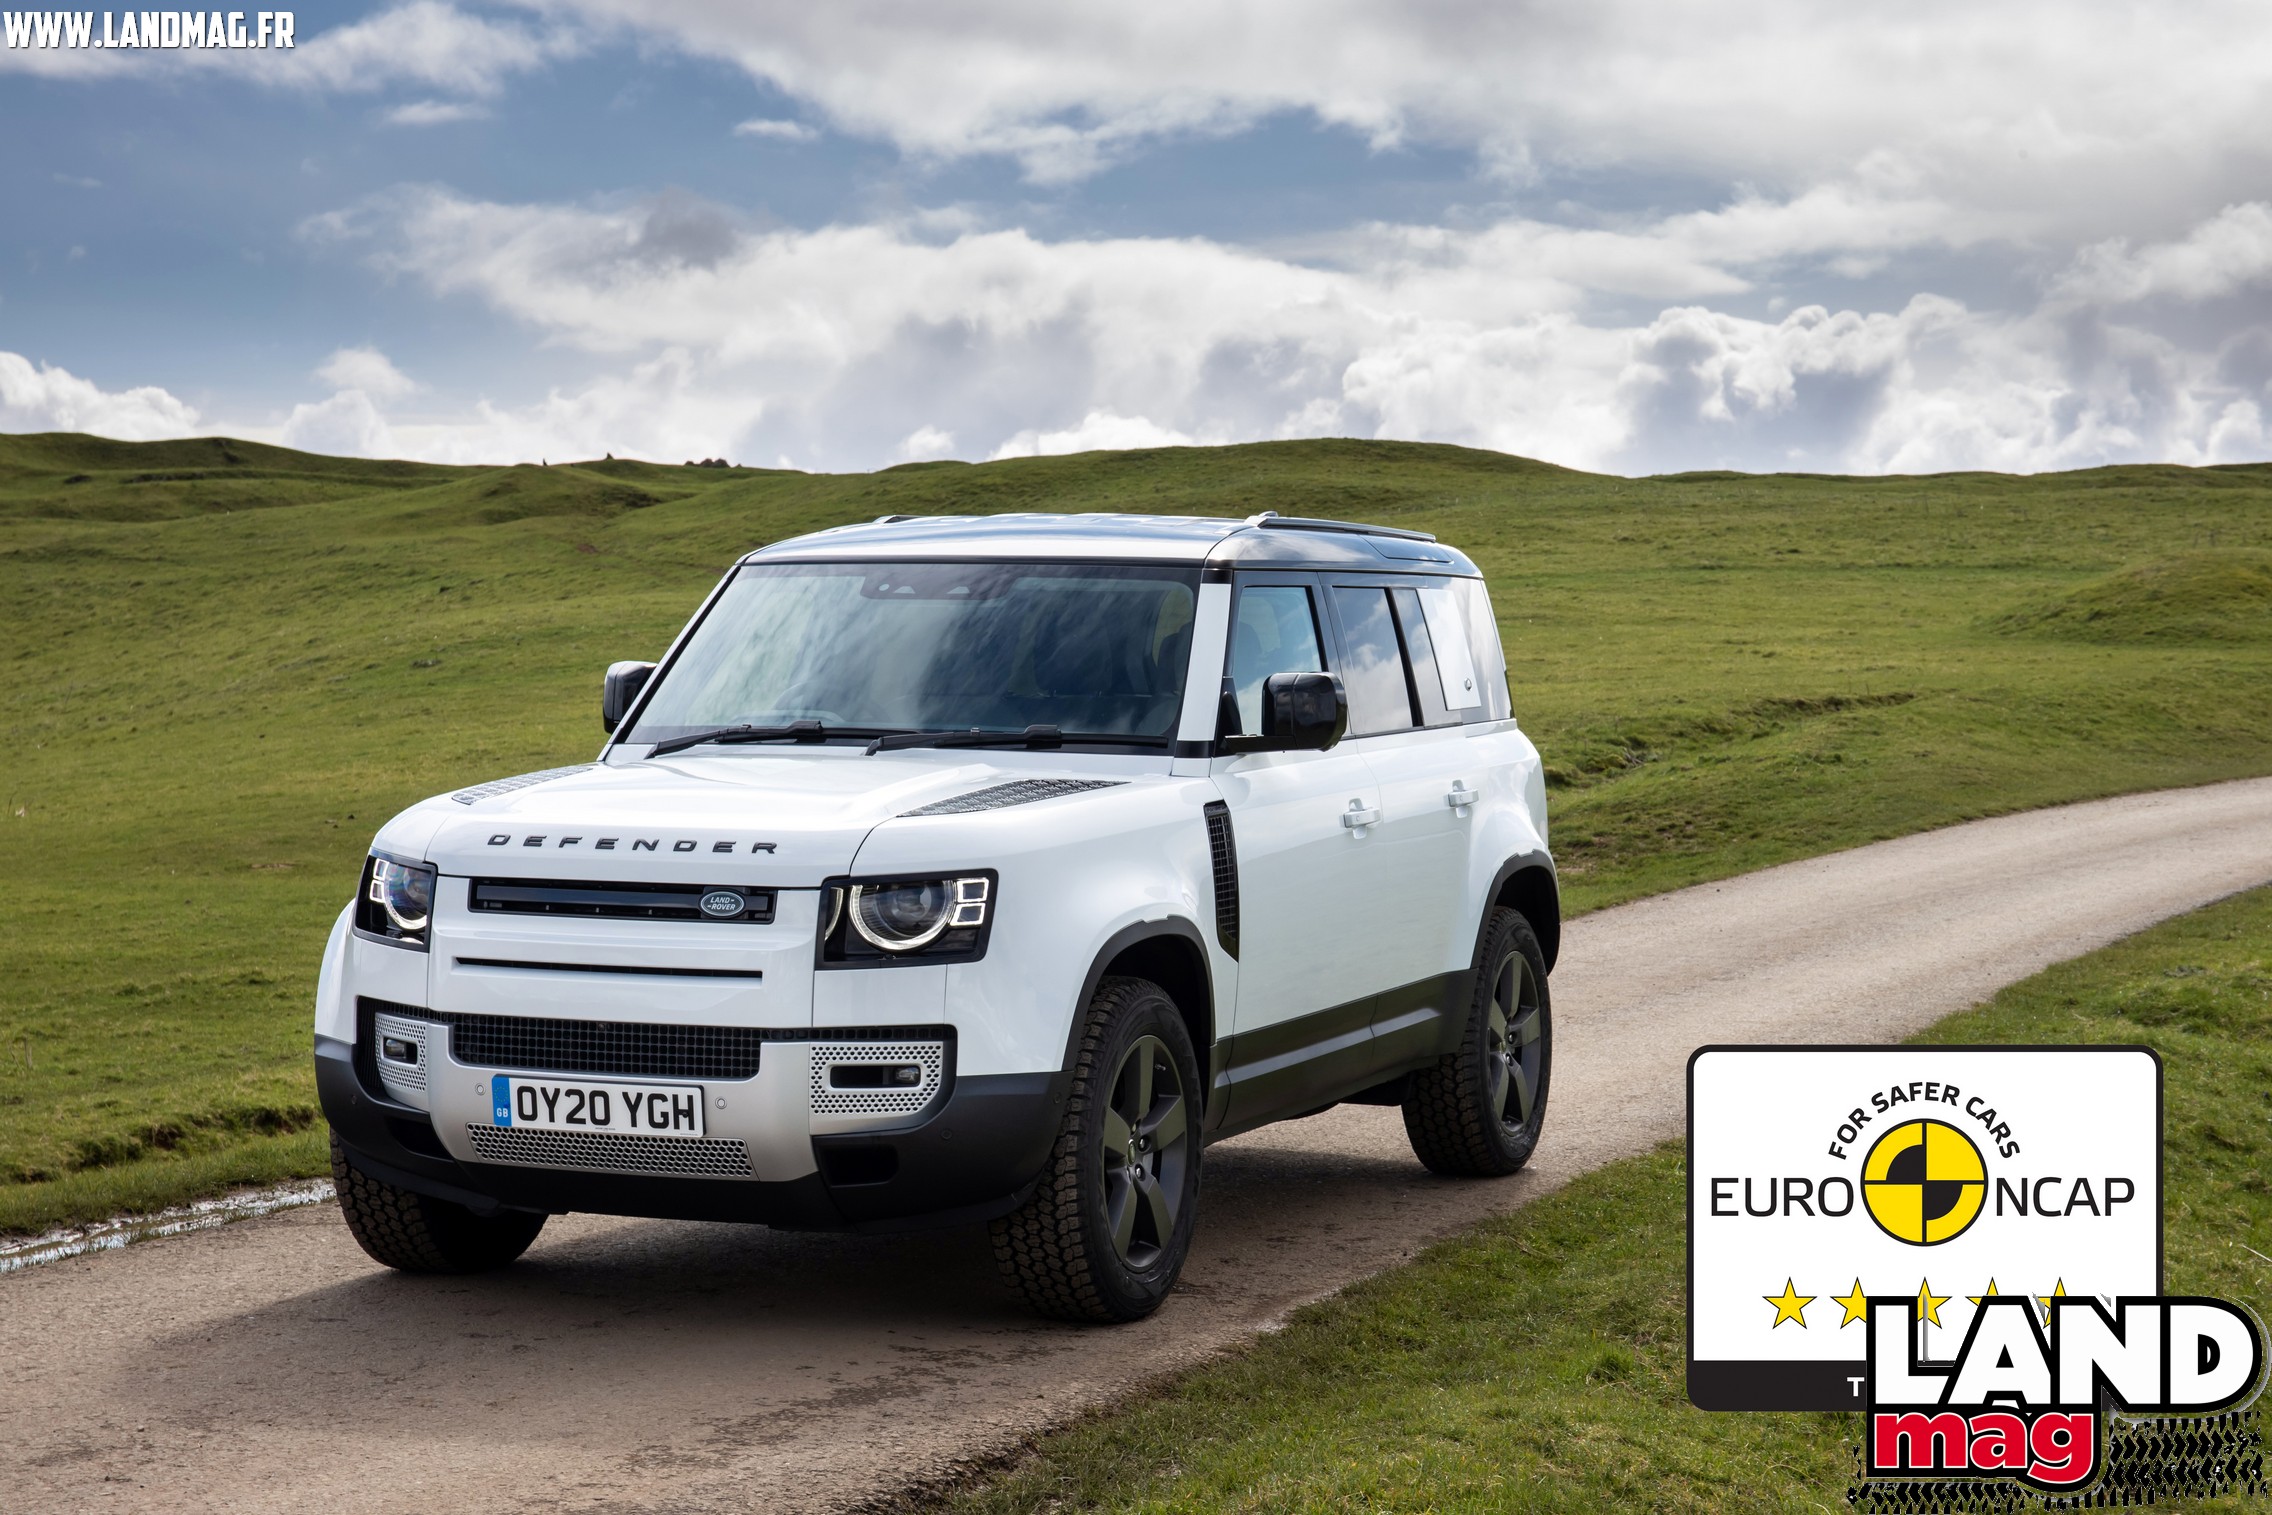 Vidéo: 5 étoiles au test Euro NCAP pour le nouveau Land Rover Defender